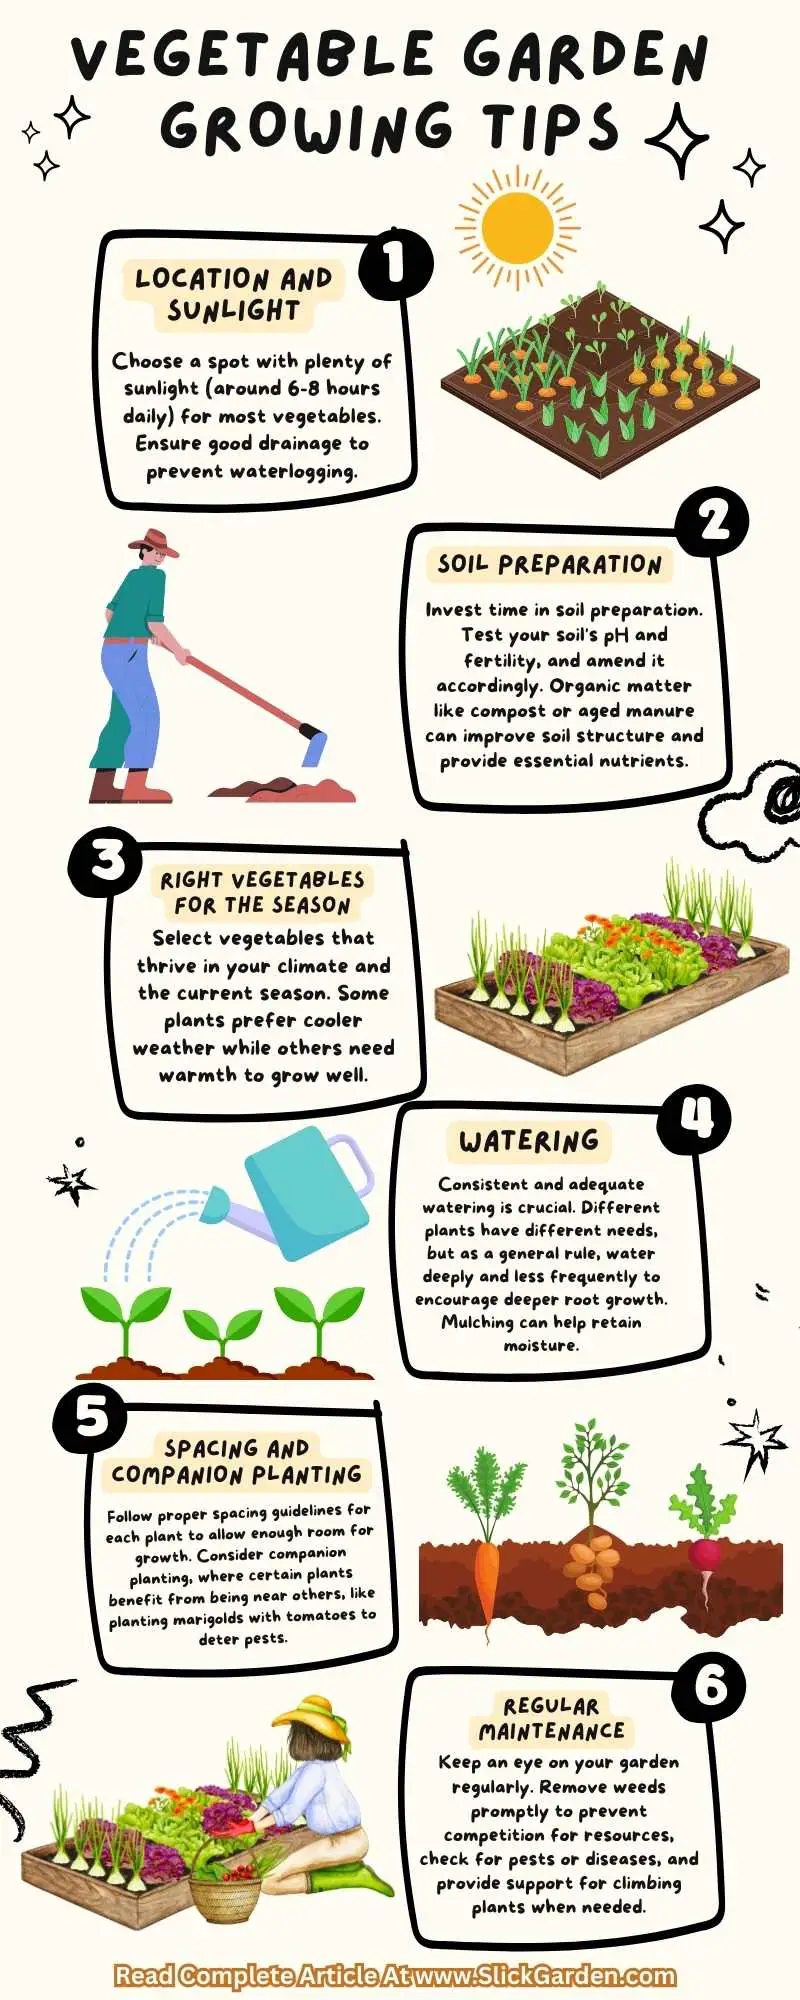 Vegetable Garden Growing Tips infographic